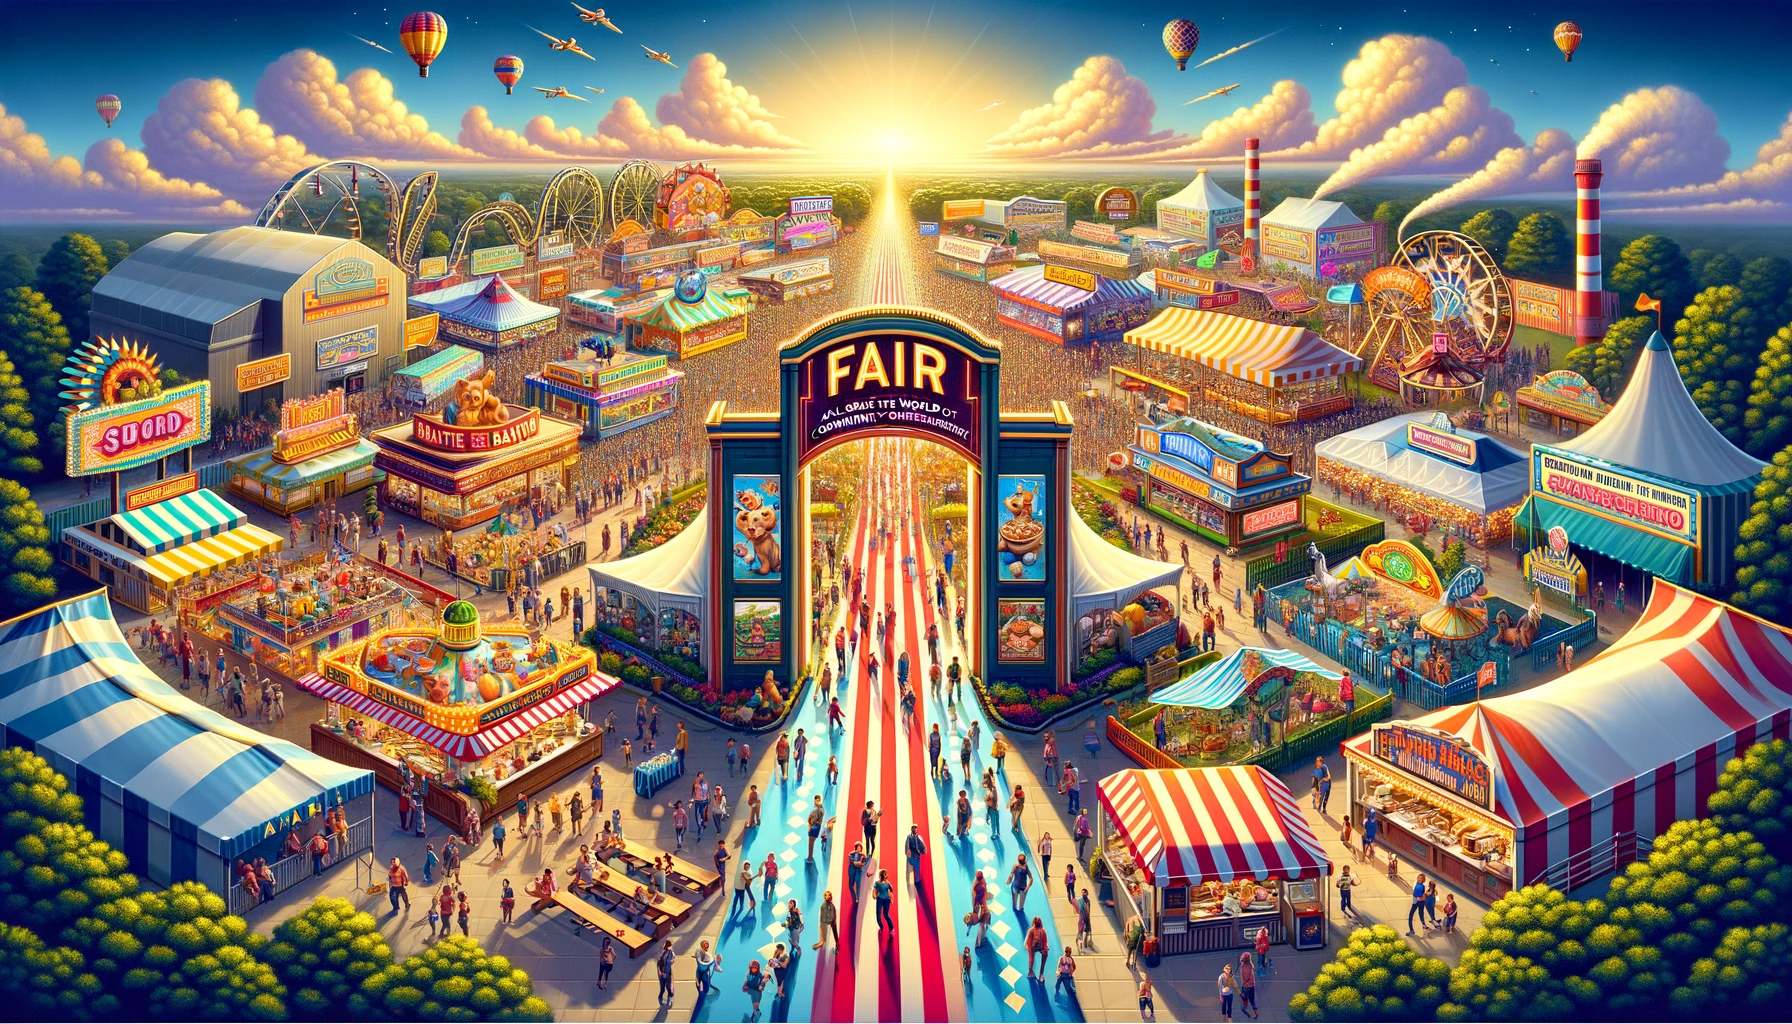 All Things Fair Related Spirit of the Fair